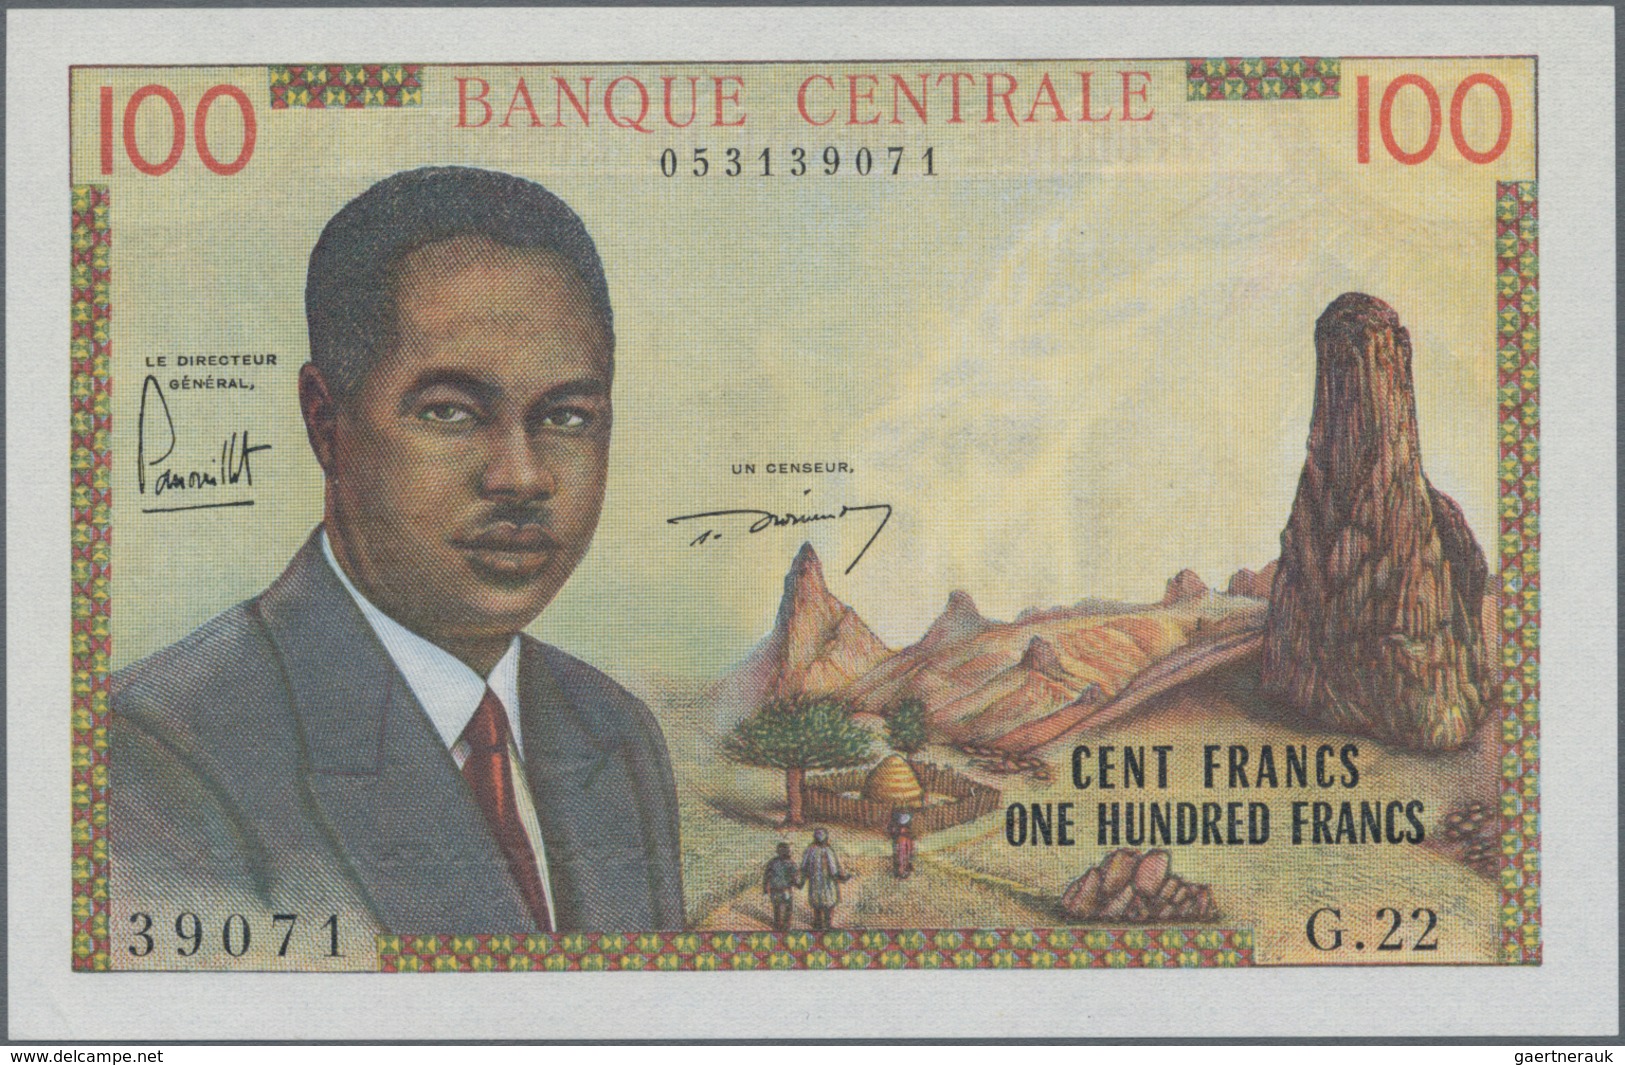 Cameroon / Kamerun: Banque Centrale - République Fédérale Du Cameroun 100 Francs ND(1962), P.10, Tin - Cameroun